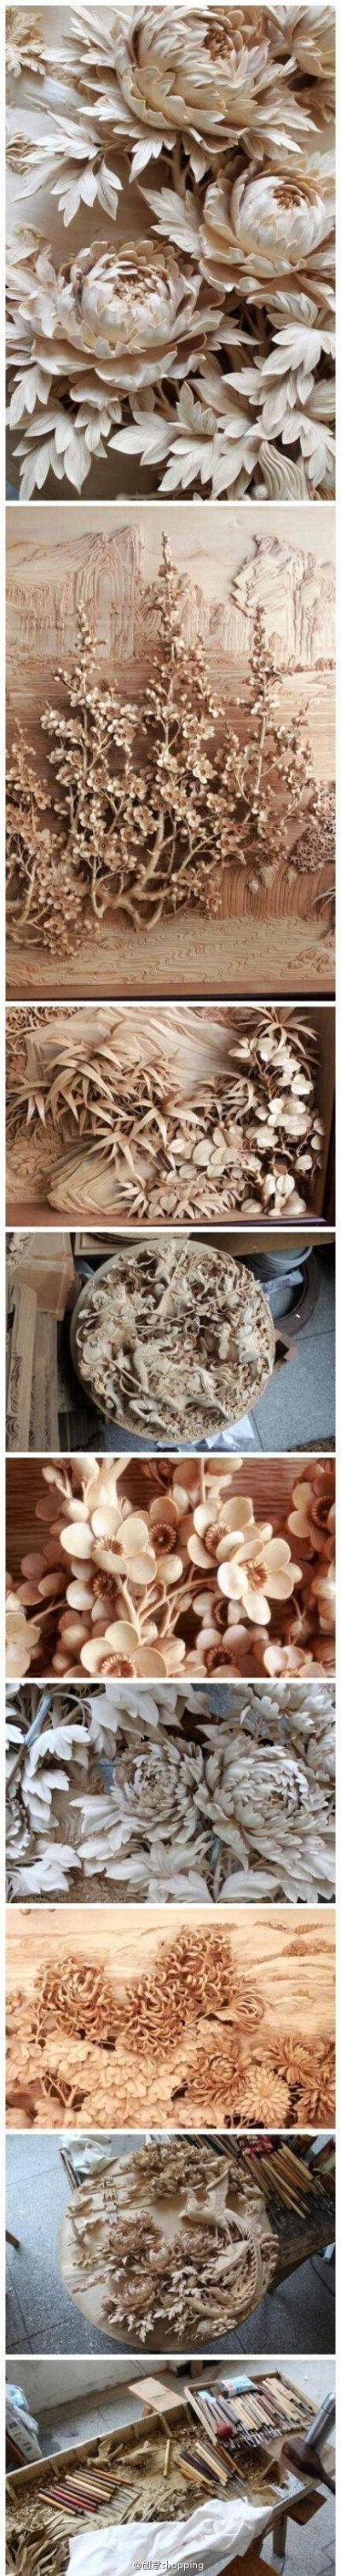 中国民间工艺 · 花样木雕，中国传统技艺和人民智慧的精华。